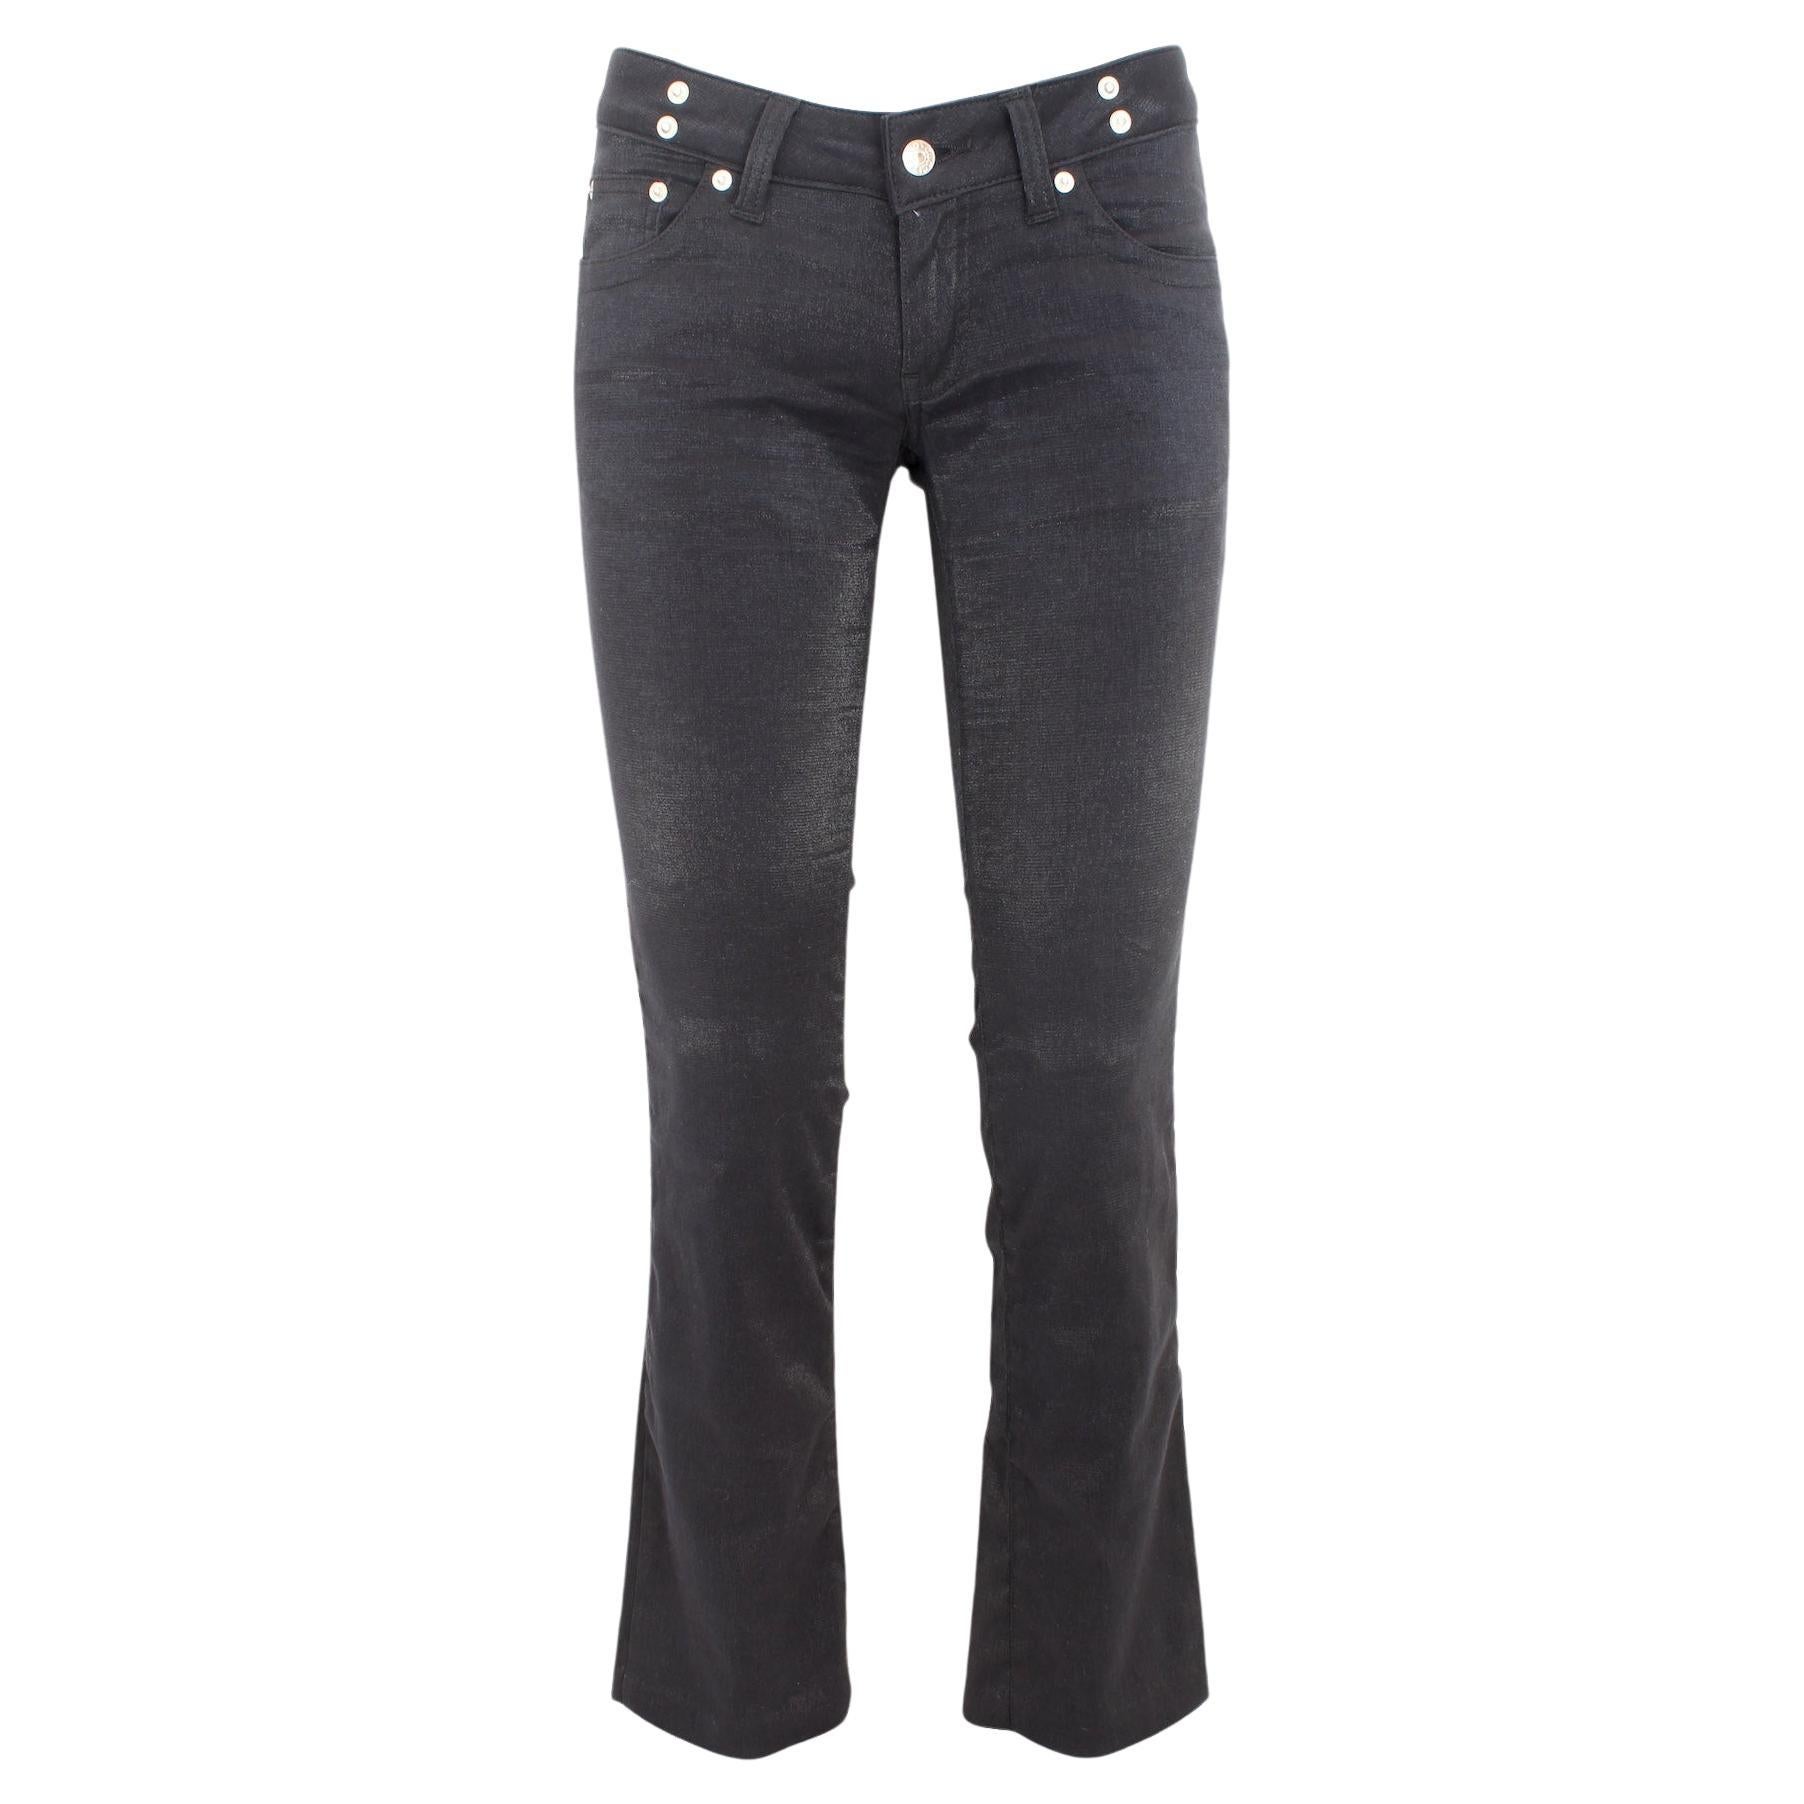 Gucci Black Pamuk Lurex Capri Jeans Pants 2000s  For Sale